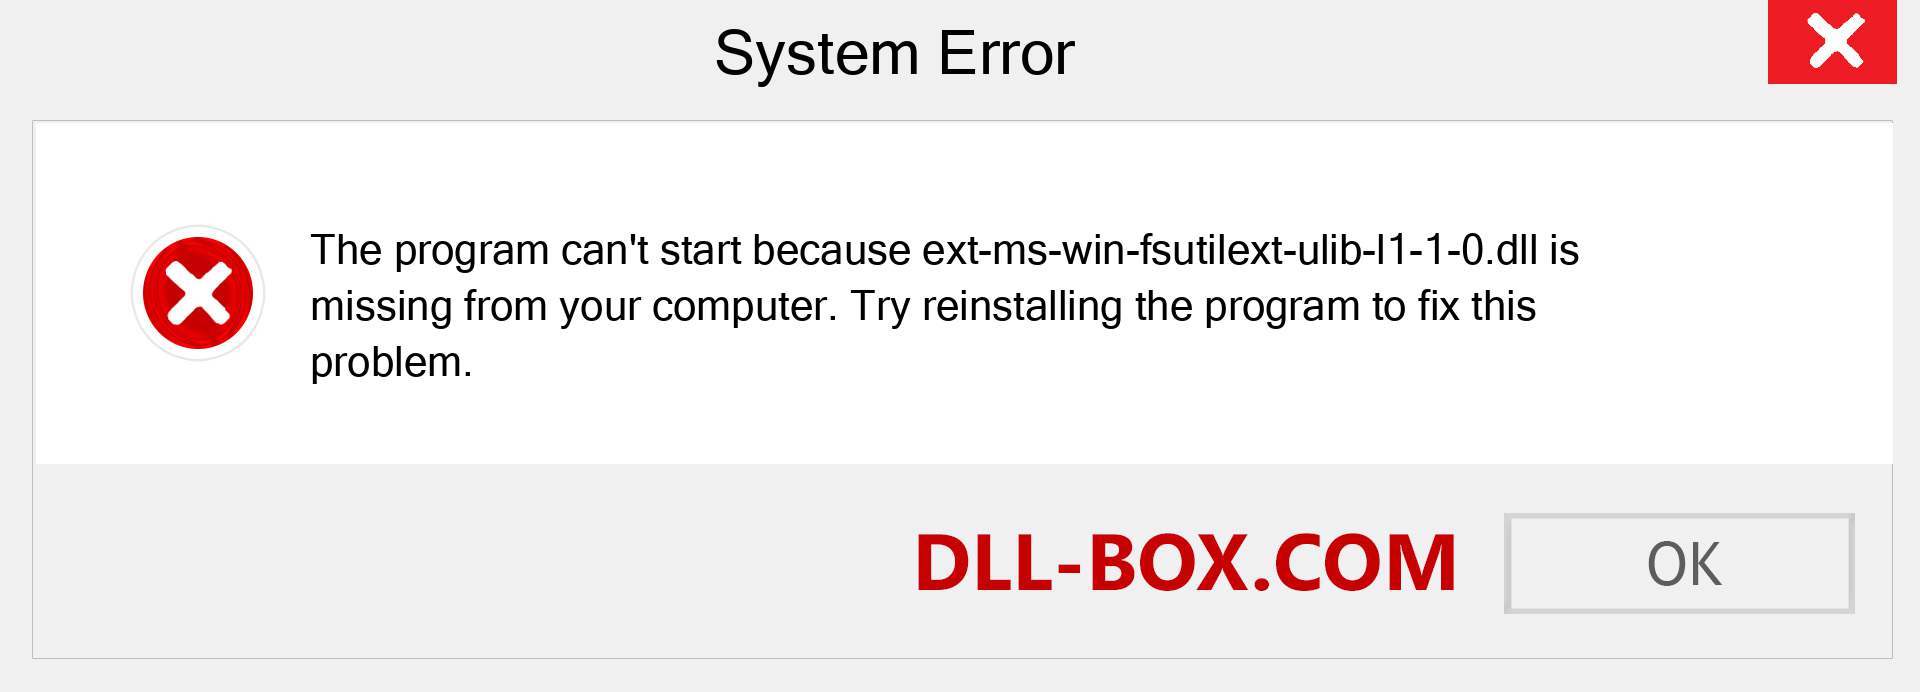  ext-ms-win-fsutilext-ulib-l1-1-0.dll file is missing?. Download for Windows 7, 8, 10 - Fix  ext-ms-win-fsutilext-ulib-l1-1-0 dll Missing Error on Windows, photos, images